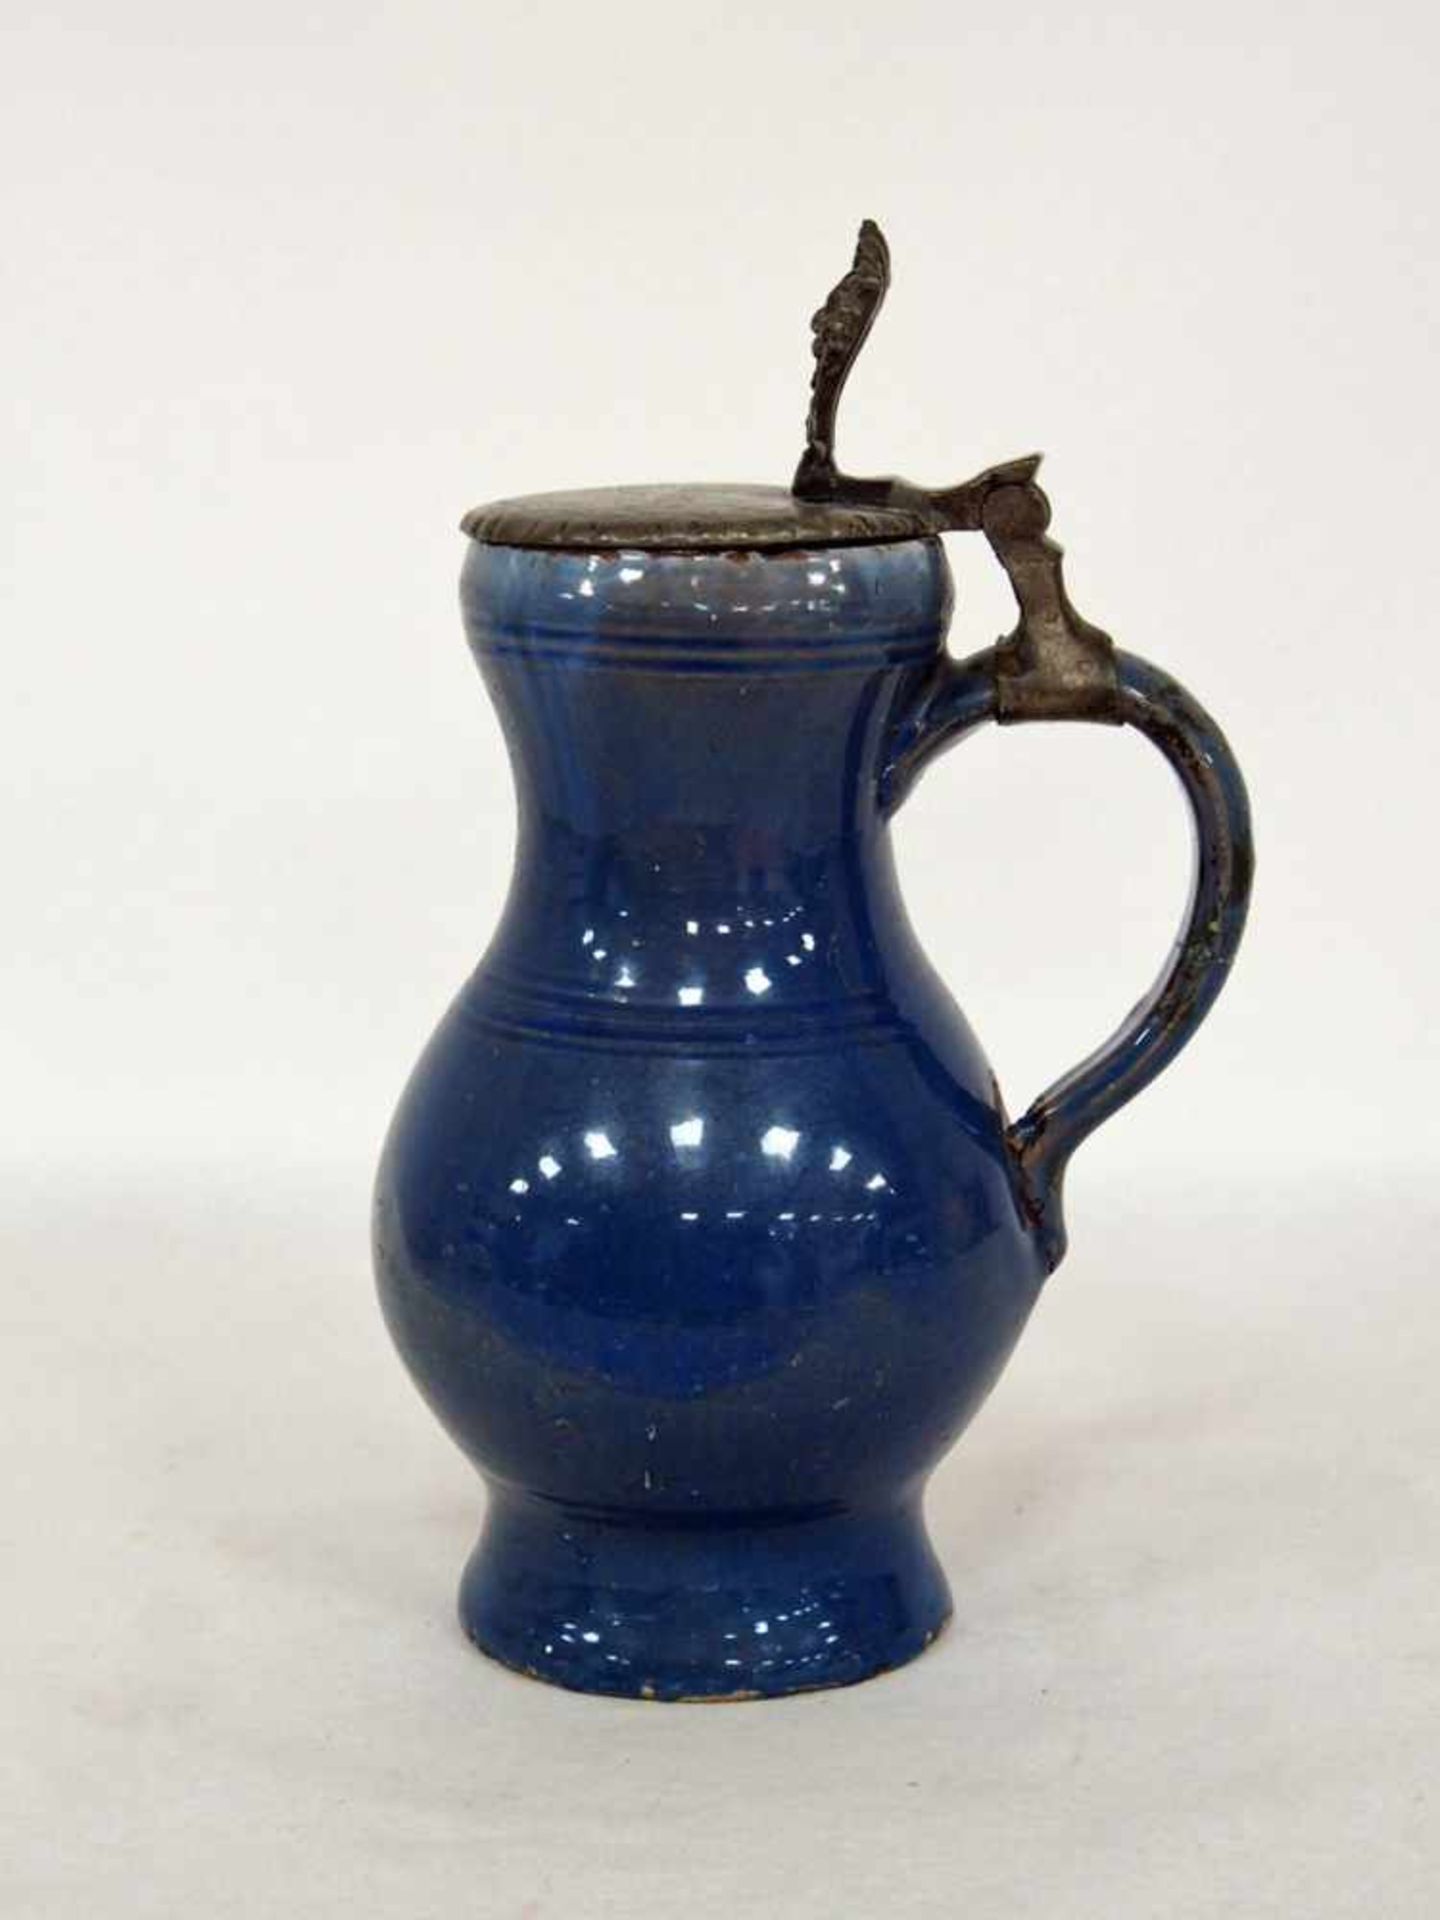 Henkelkruguniblau glasiert, Zinnmontierung, Schrezheim 19. Jahrhundert, Höhe 25,5 cm (